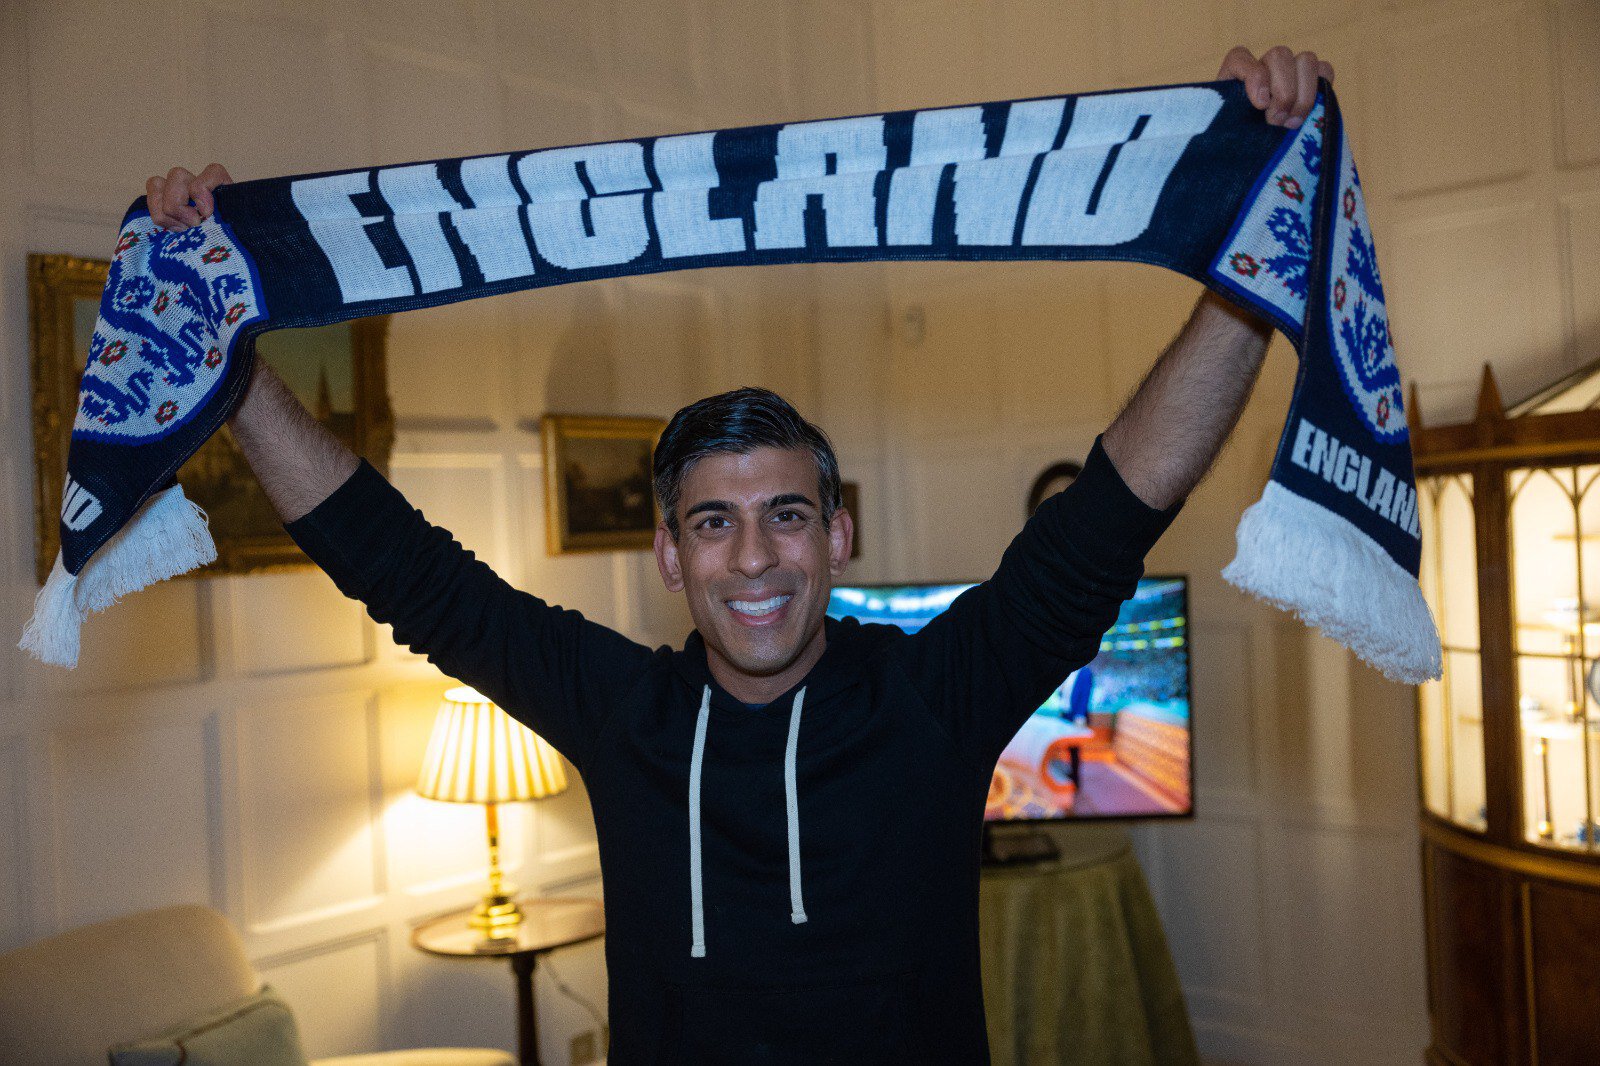 До матча он выложил фото с шарфом сборной и написал: "Вперед, Англия! 